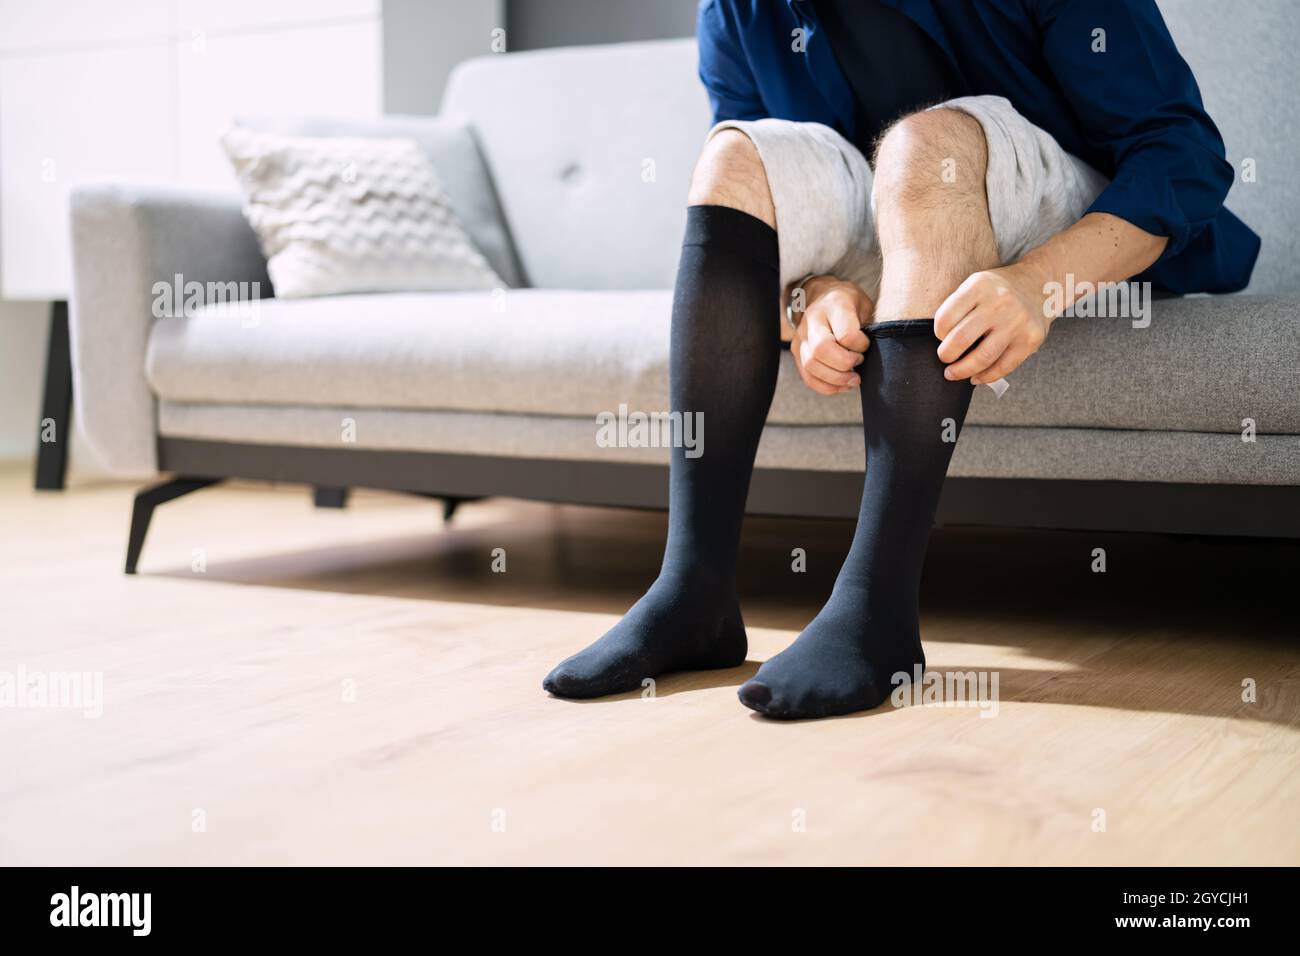 Mann, Der Medizinische Kompressionsstrümpfe Auf Die Beine Setzt  Stockfotografie - Alamy